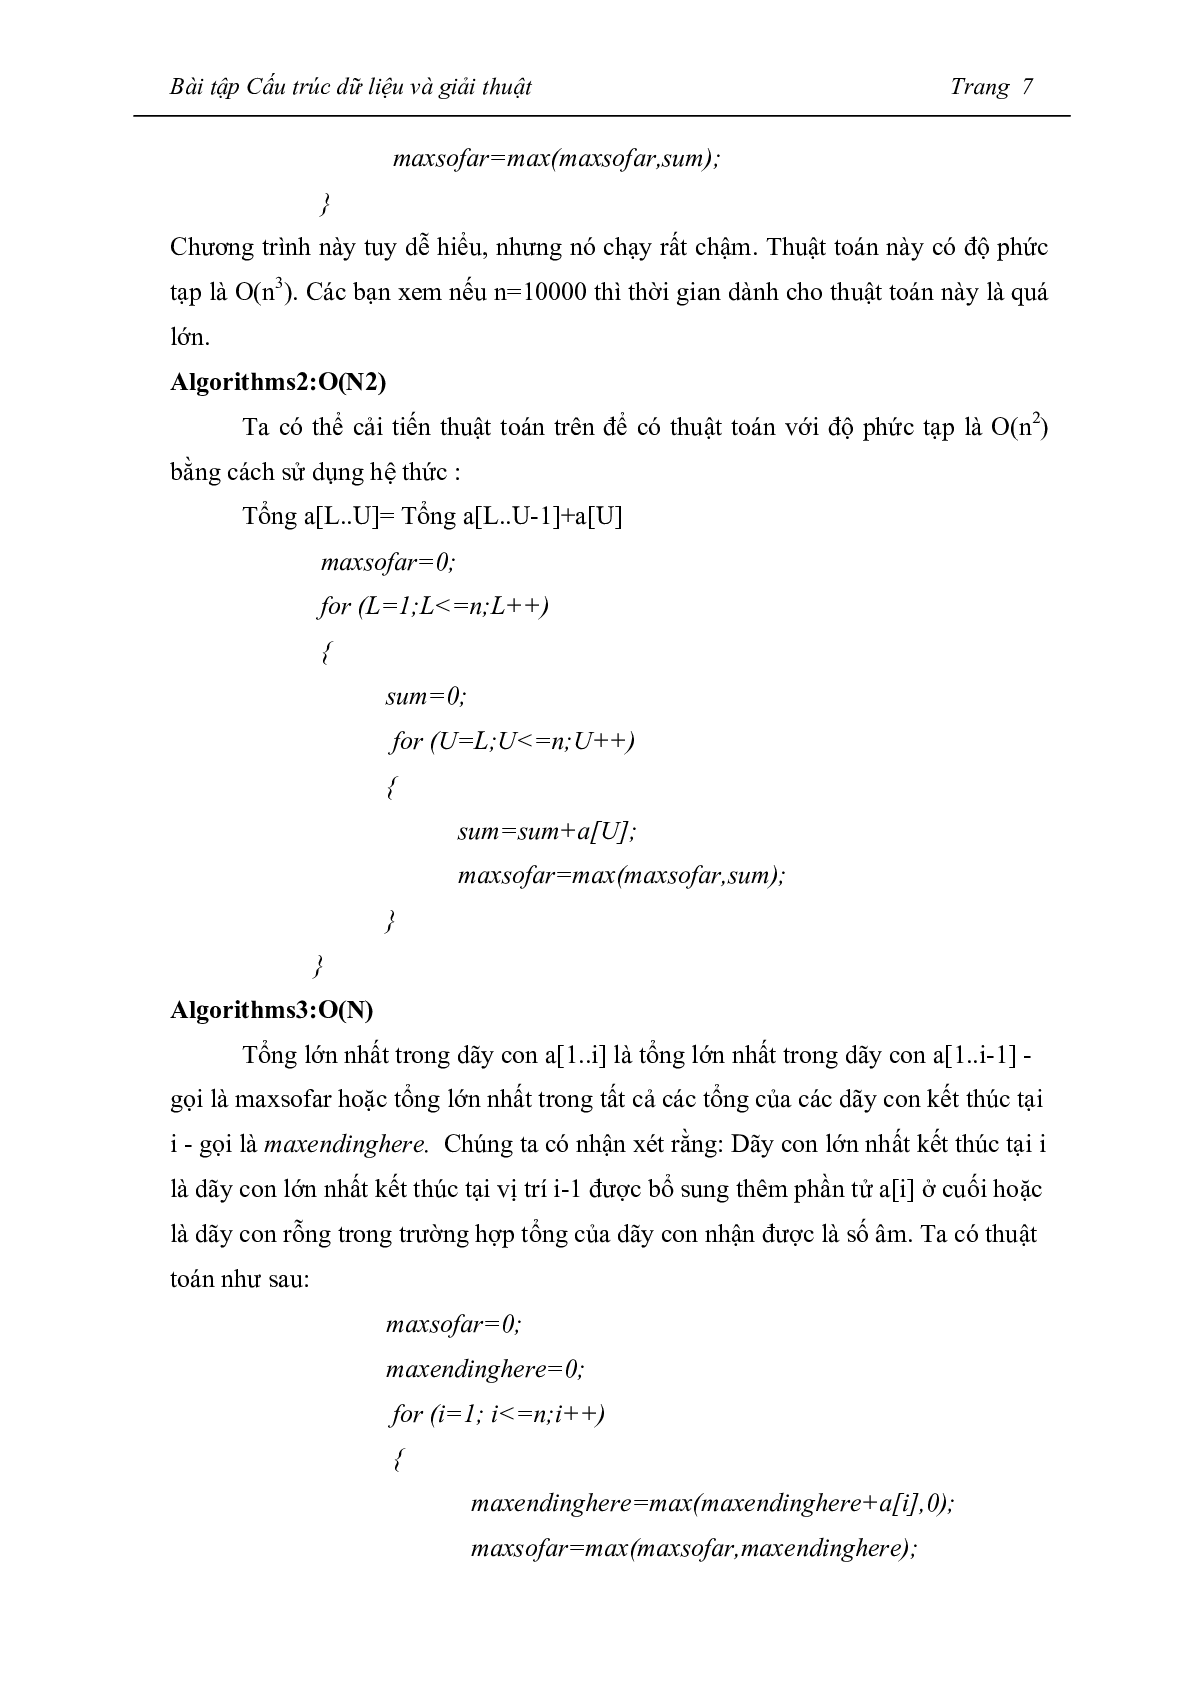 Ngân hàng bài tập Cấu trúc dữ liệu và giải thuật (có đáp án) hay, hấp dẫn nhất (trang 7)